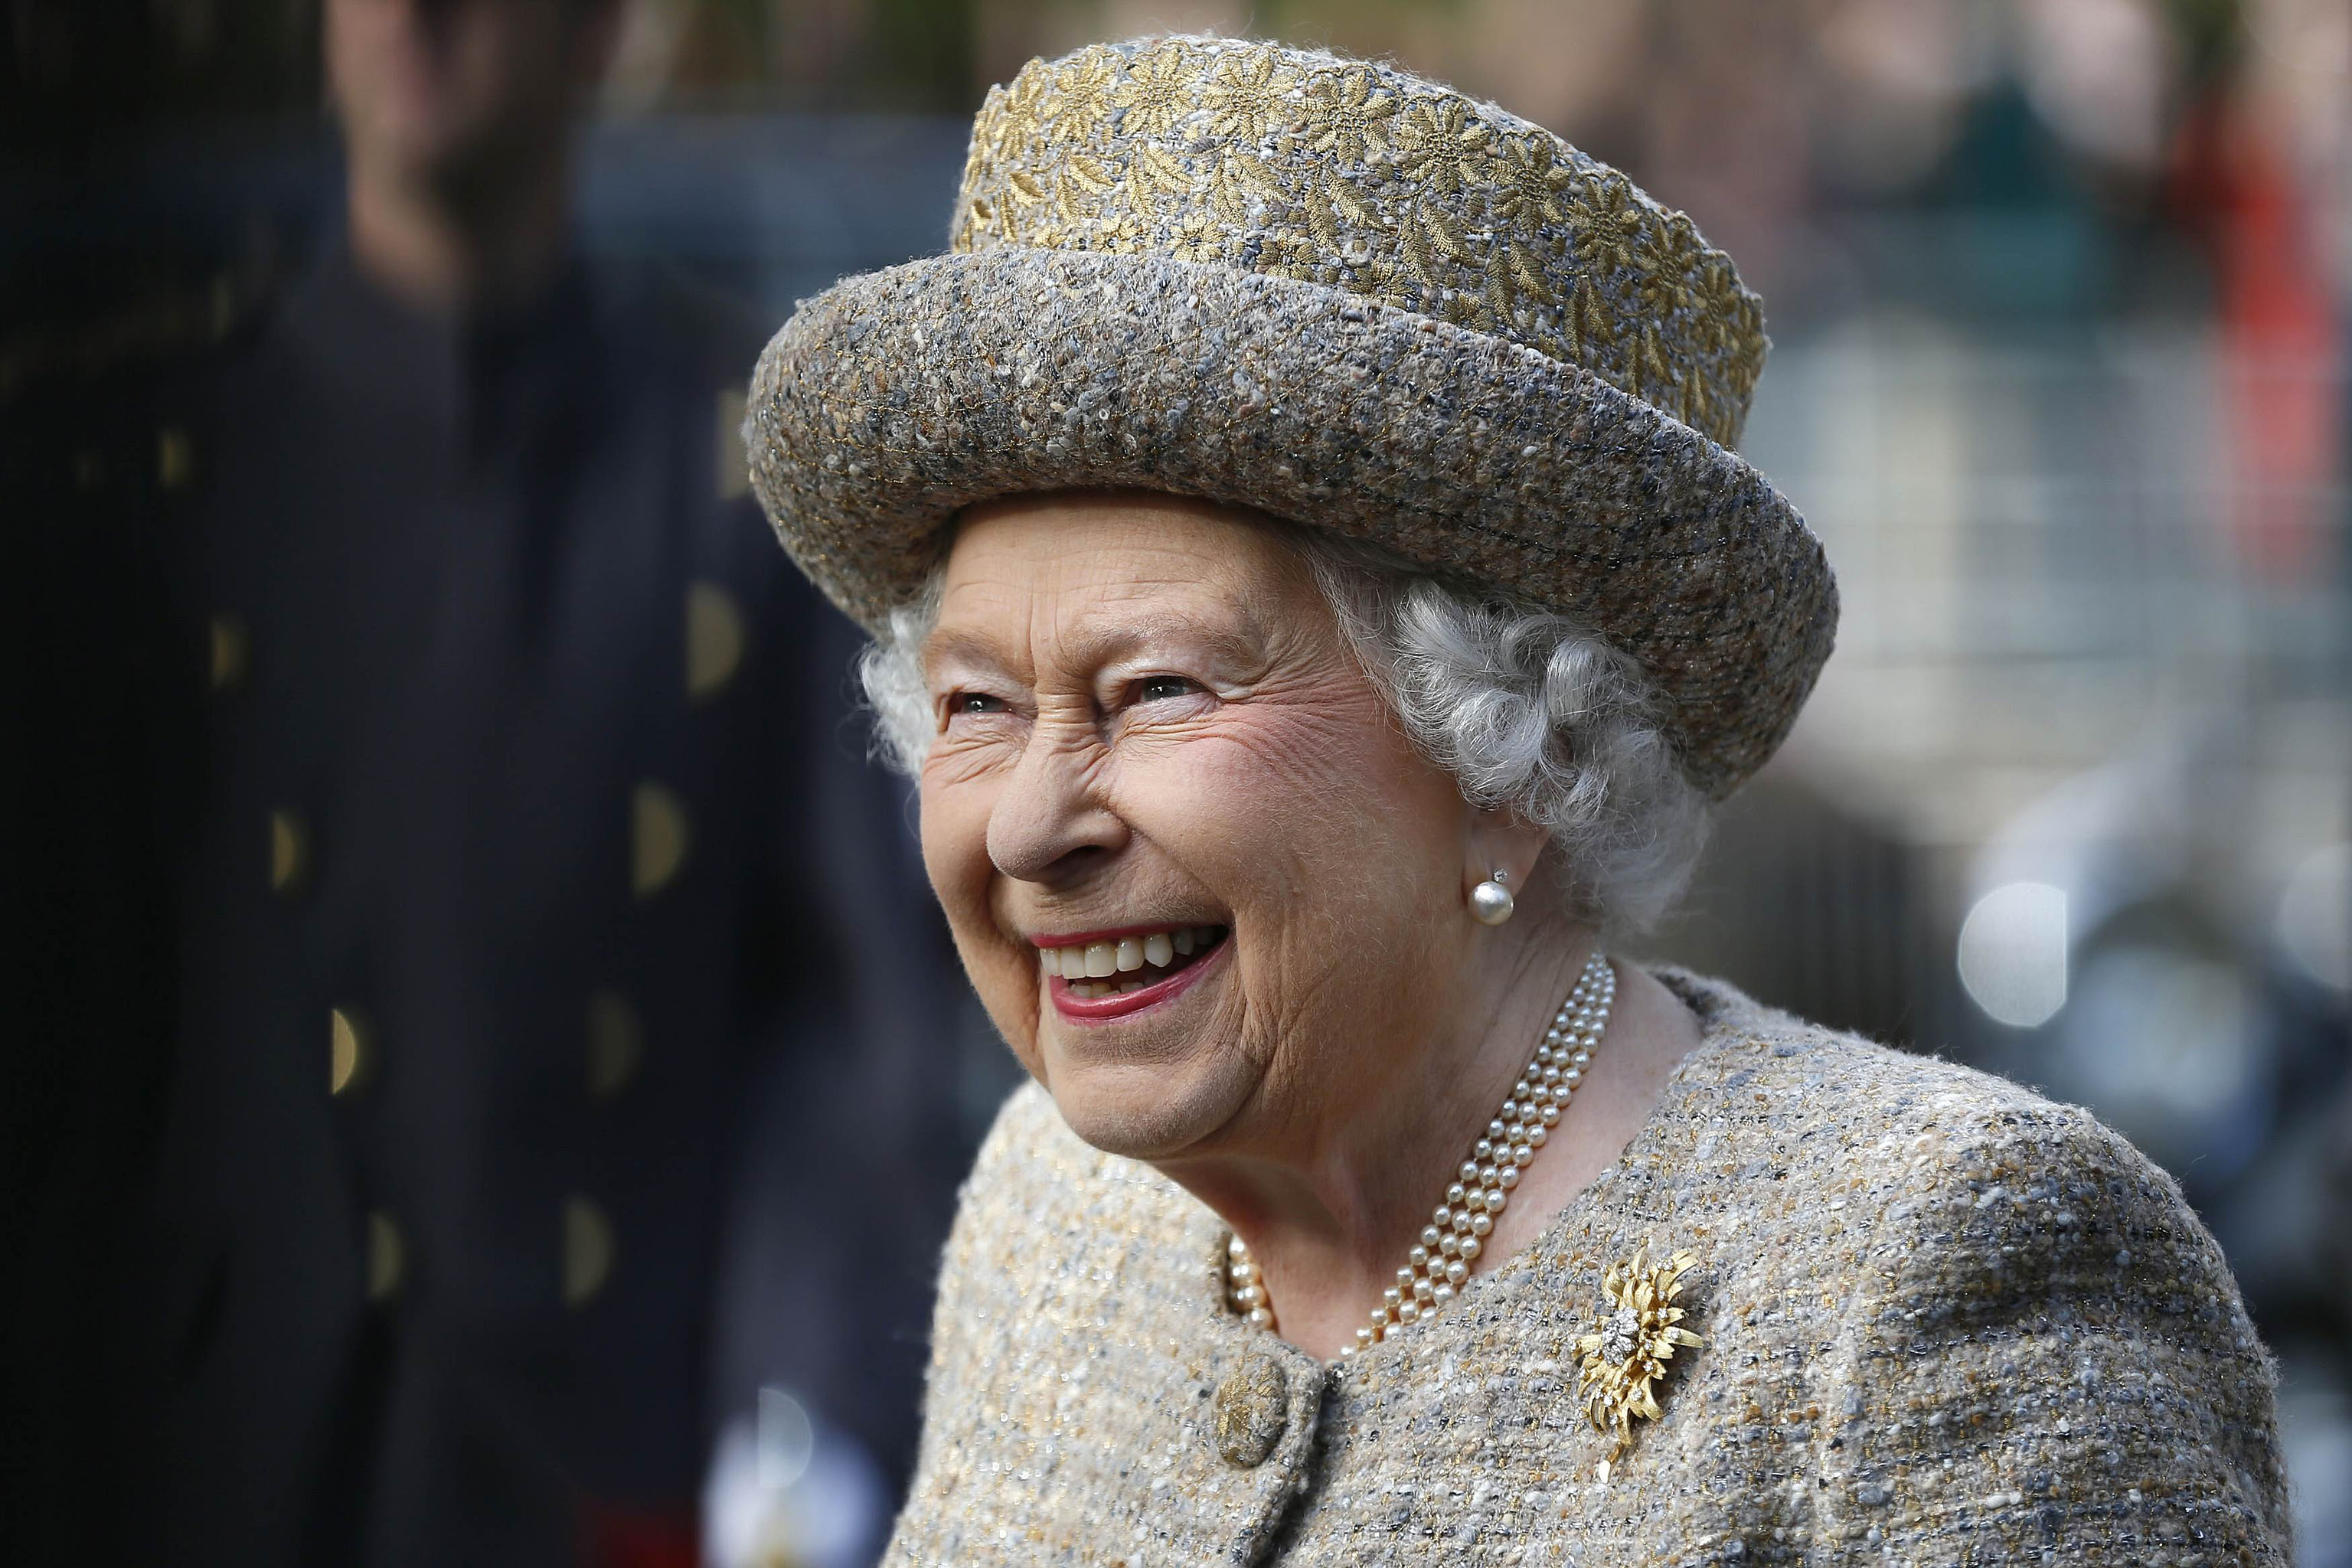 Елизавета II недовольна расходами на отдых принца Уильяма и Кейт Миддлтон